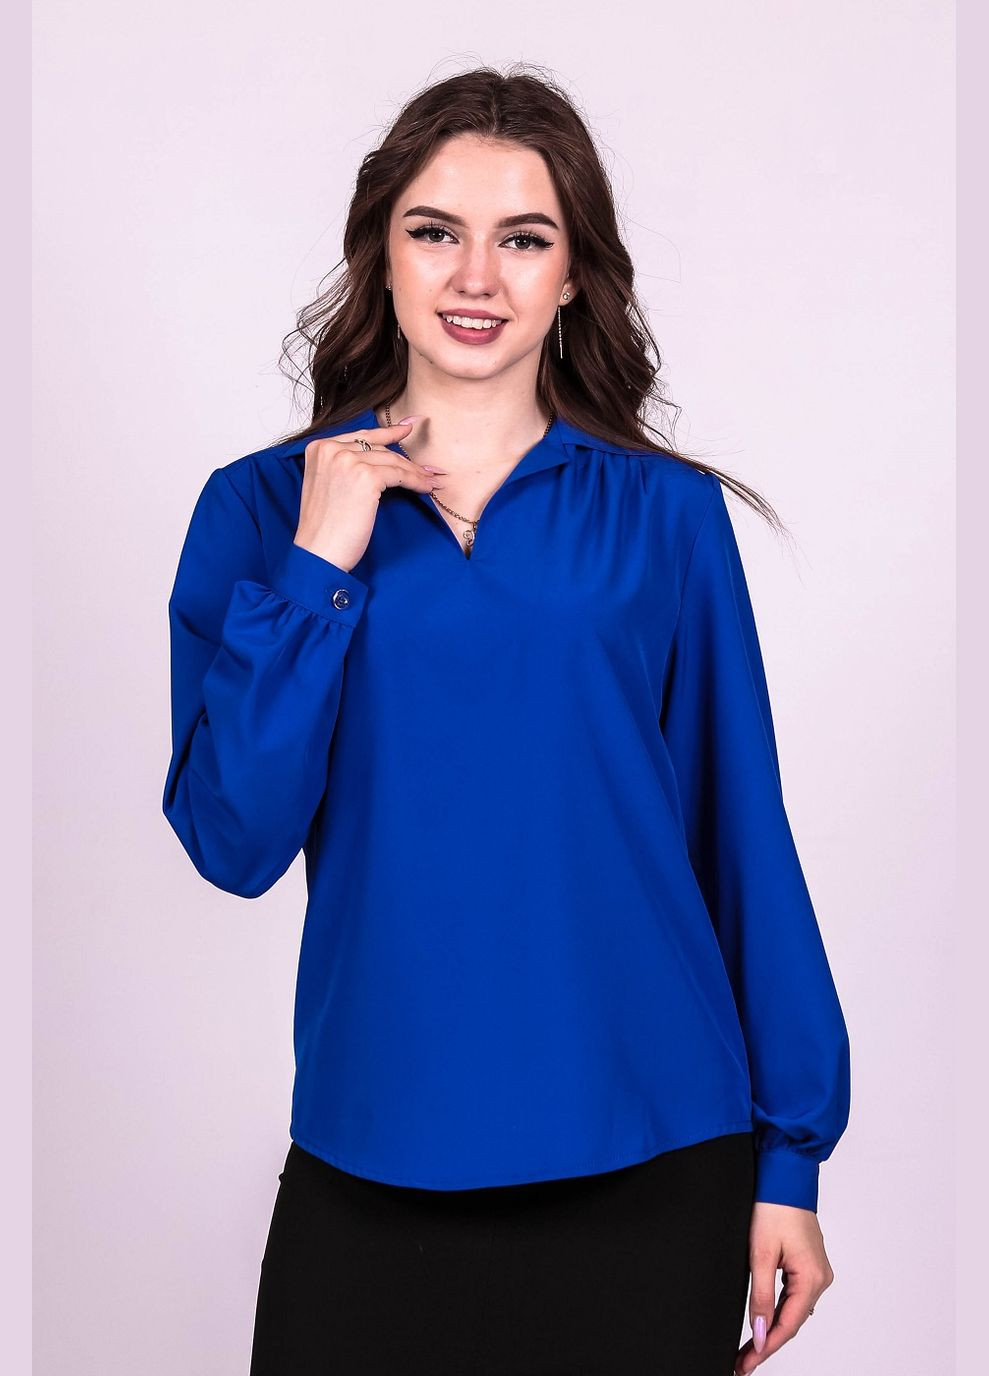 Синіти блузка жіноча 052 однотонний софт електрик Актуаль